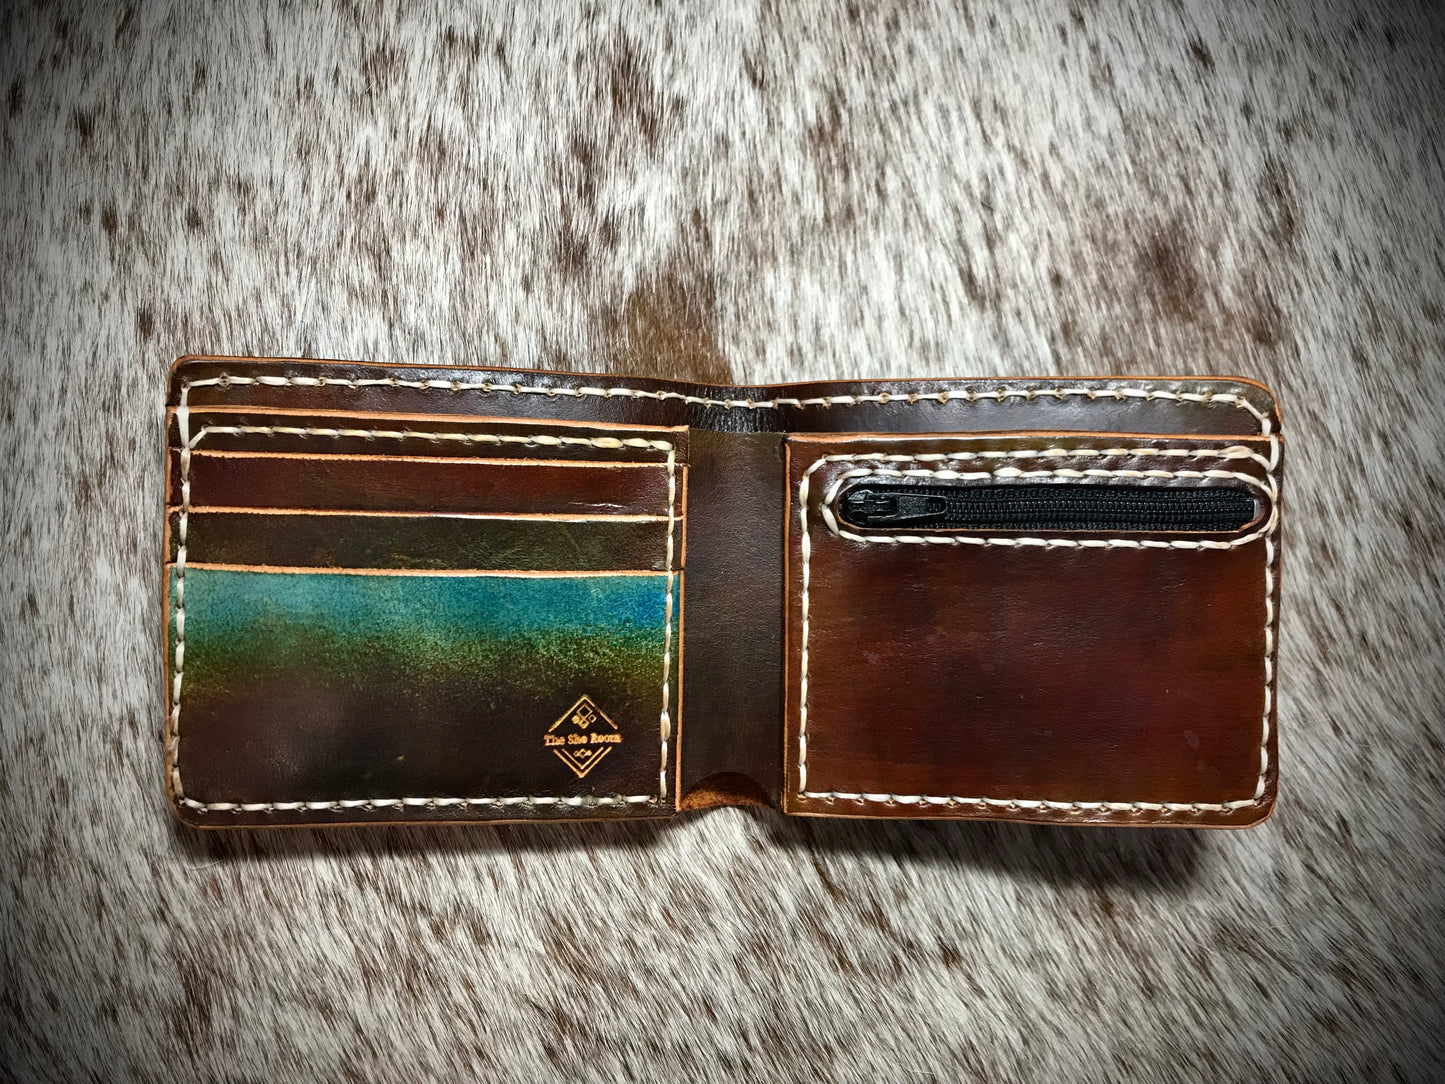 Turkish Filigree Bi-fold wallet